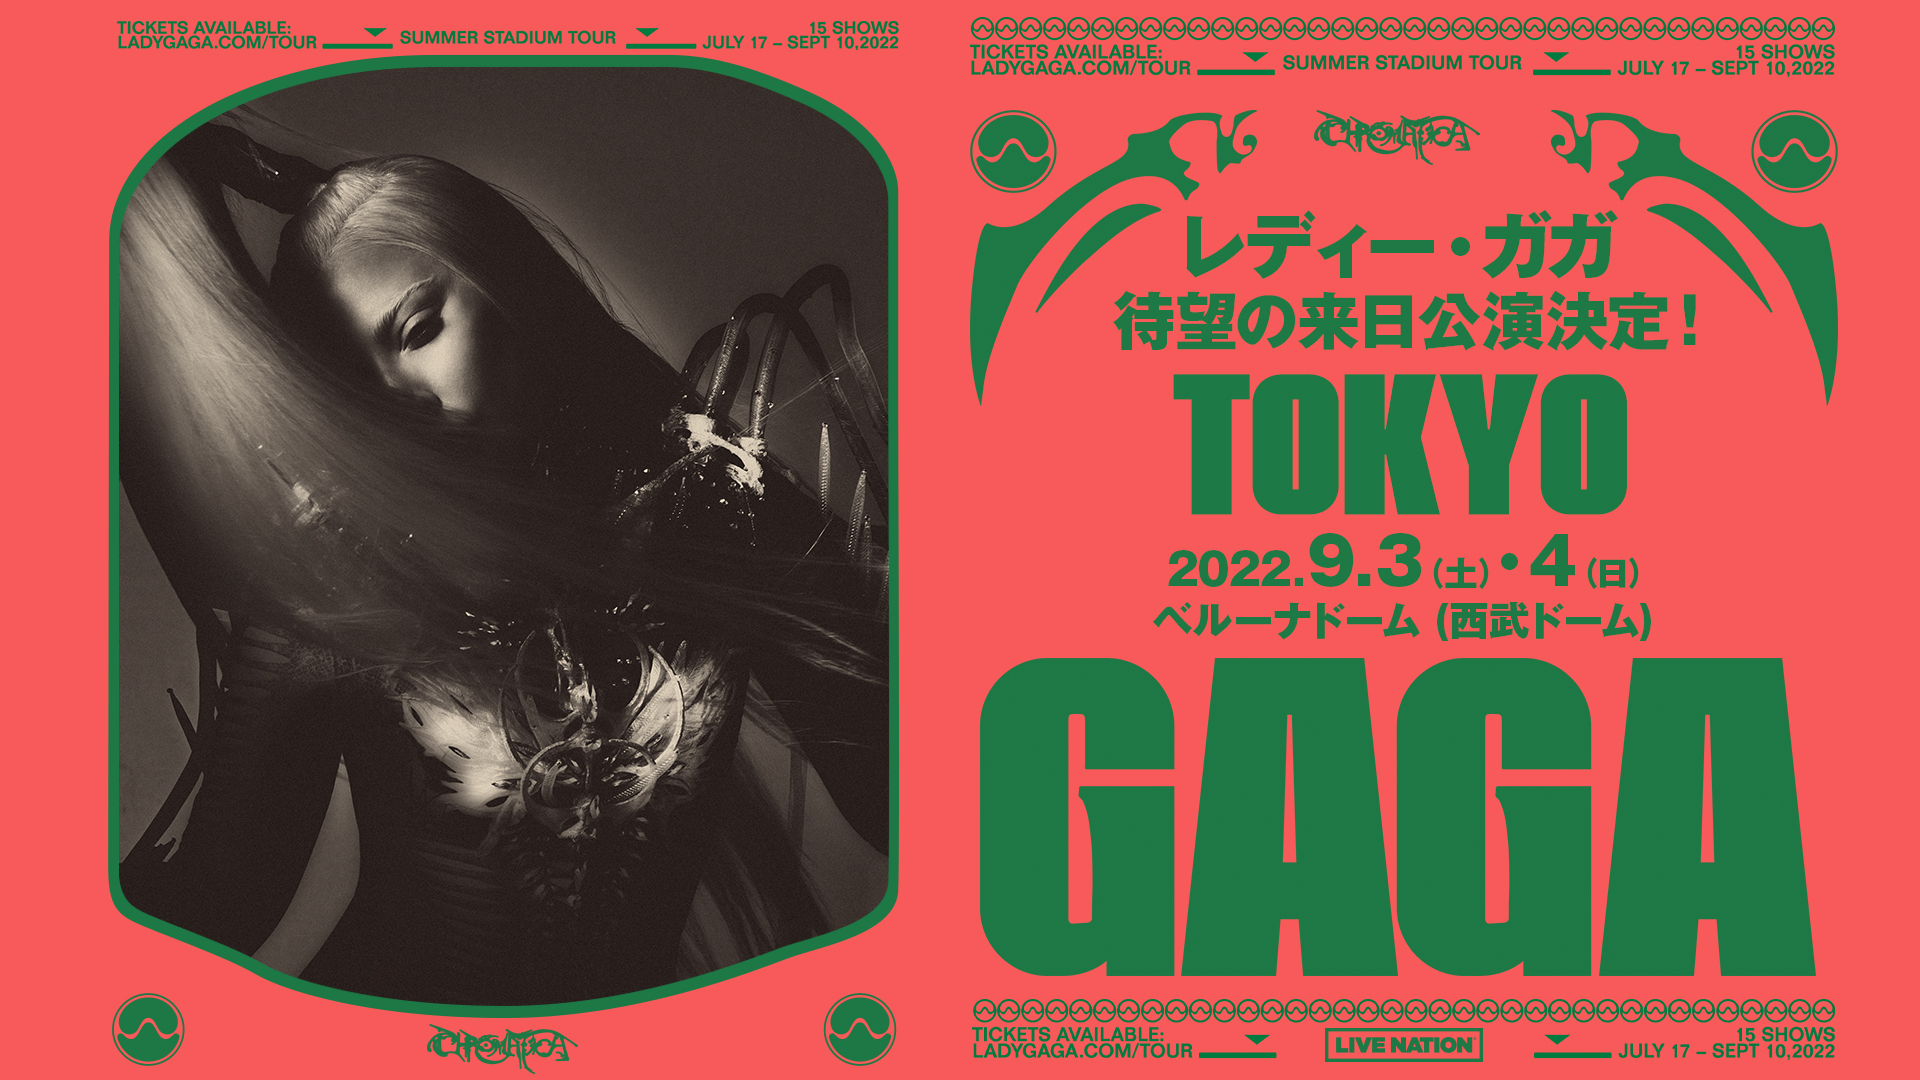 LADY GAGA（レディー・ガガ）、8年ぶりの来日公演が決定 - TOWER 